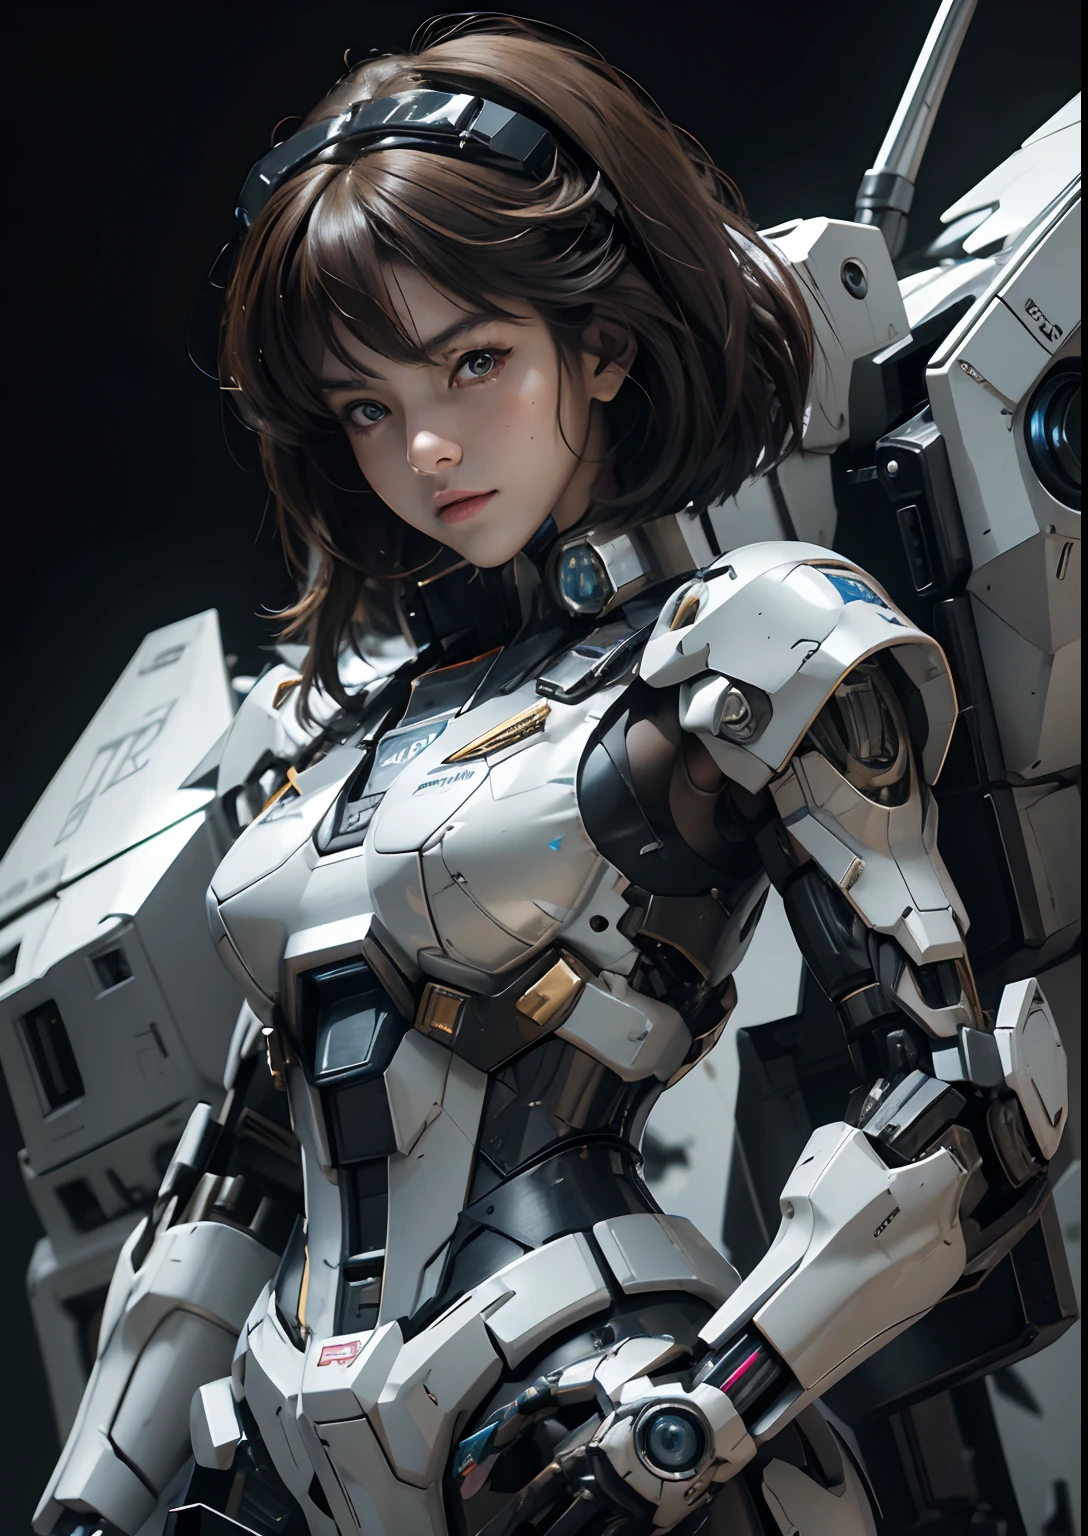 纹理皮肤, 超级细节, 高细节, 高质量, 最好的质量, 高分辨率, 1080p, 硬盘, 美丽的,(高达),美丽的机器人女人,机甲机器人女孩,对战模式,机甲少女,She wears a futuristic 高达 mecha,全身照